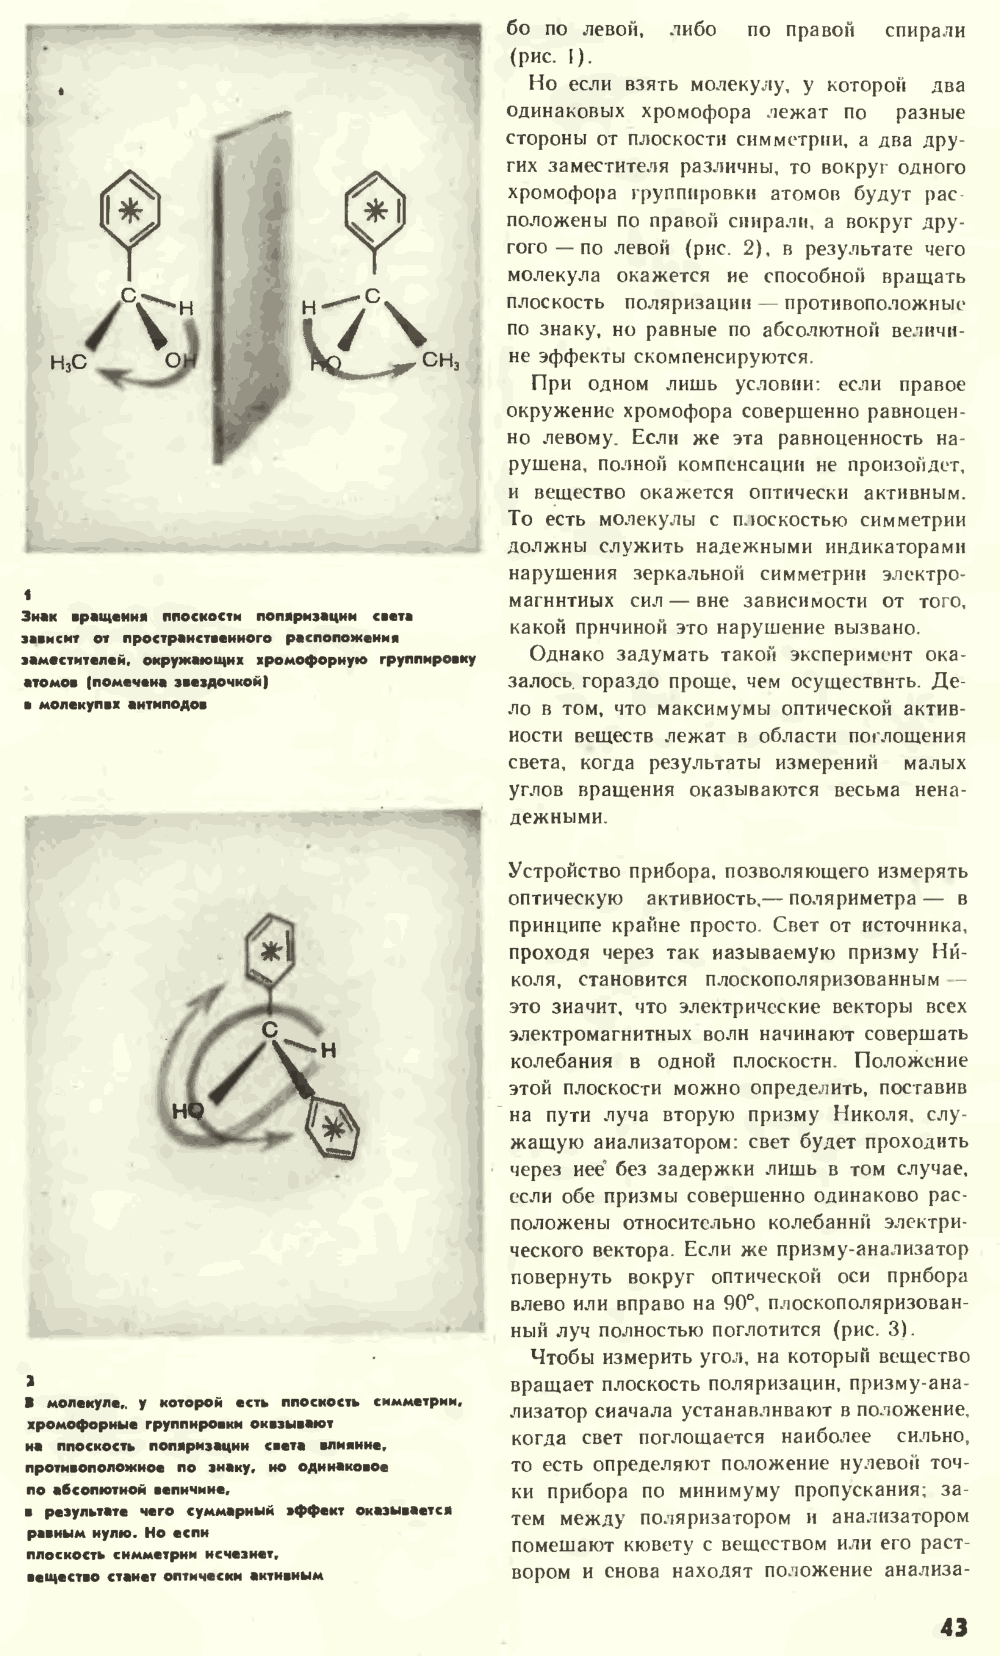 Что нарушает симметрию? В.Е. Жвирблис. Химия и жизнь, 1977, №12, с.42-49. Фотокопия №2